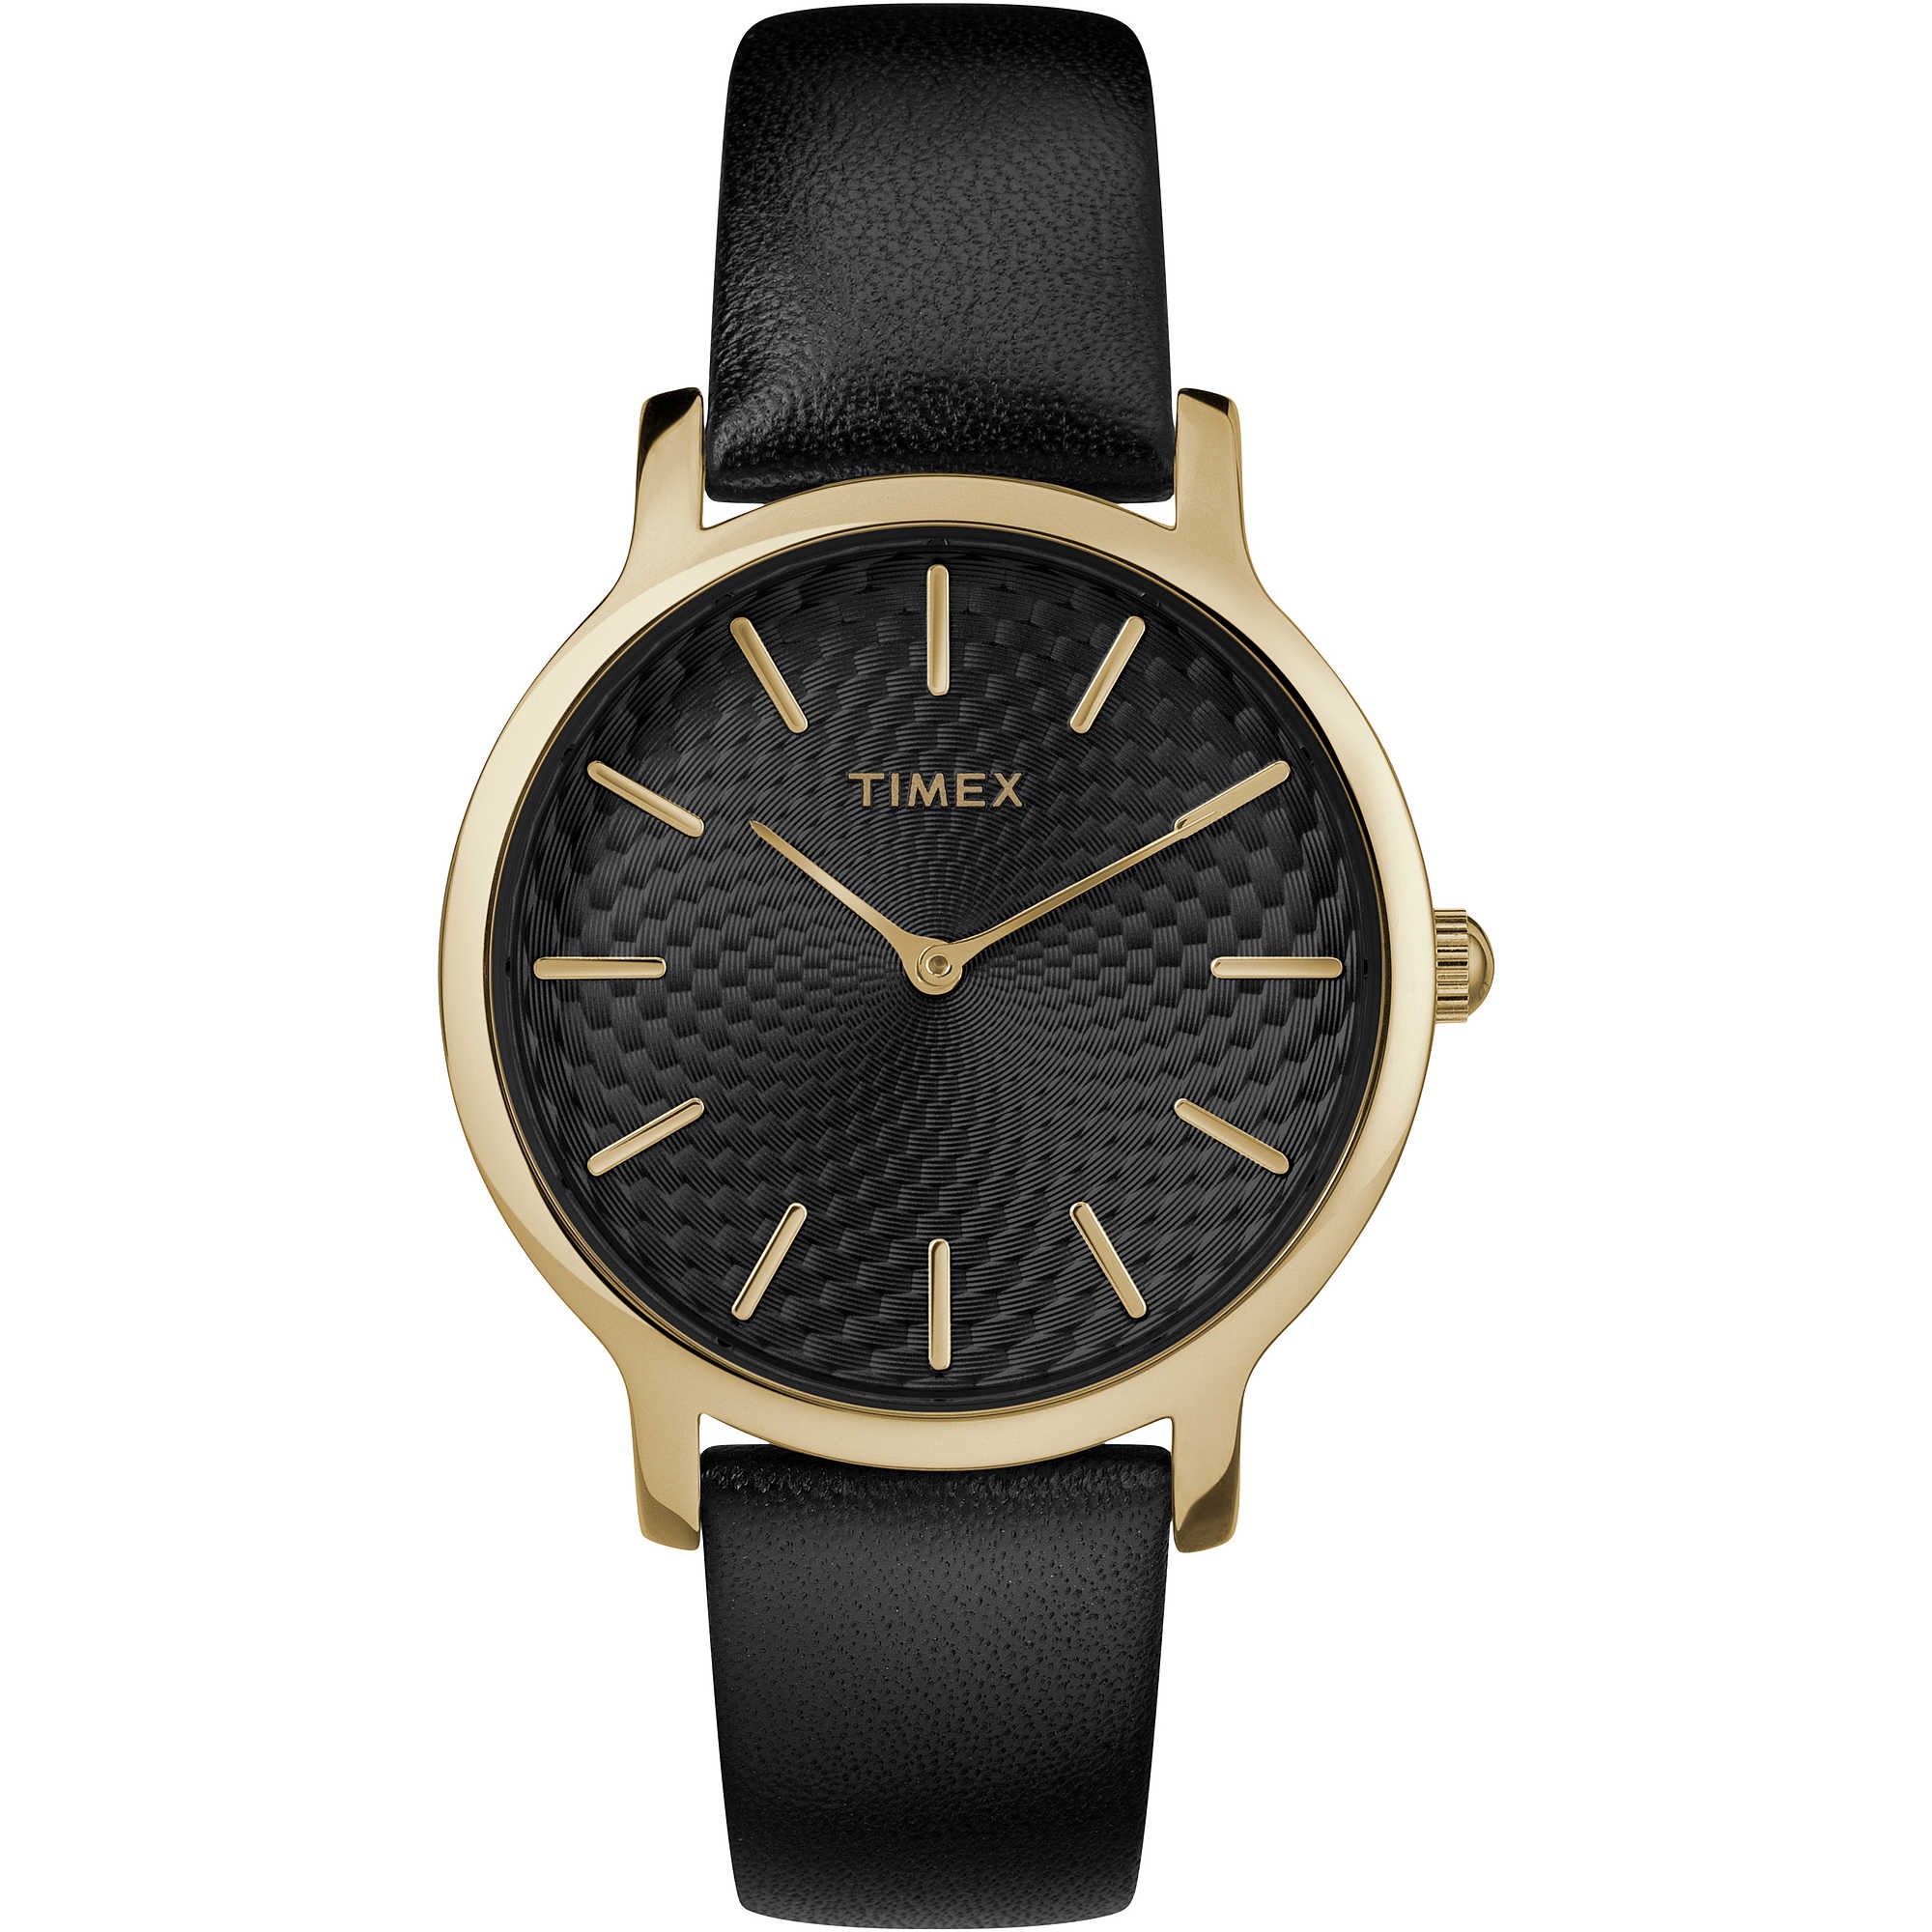 TIMEX: Orologio donna solo tempo della collezione SKYLINE con cinturino in pelle nero, TW2R36400